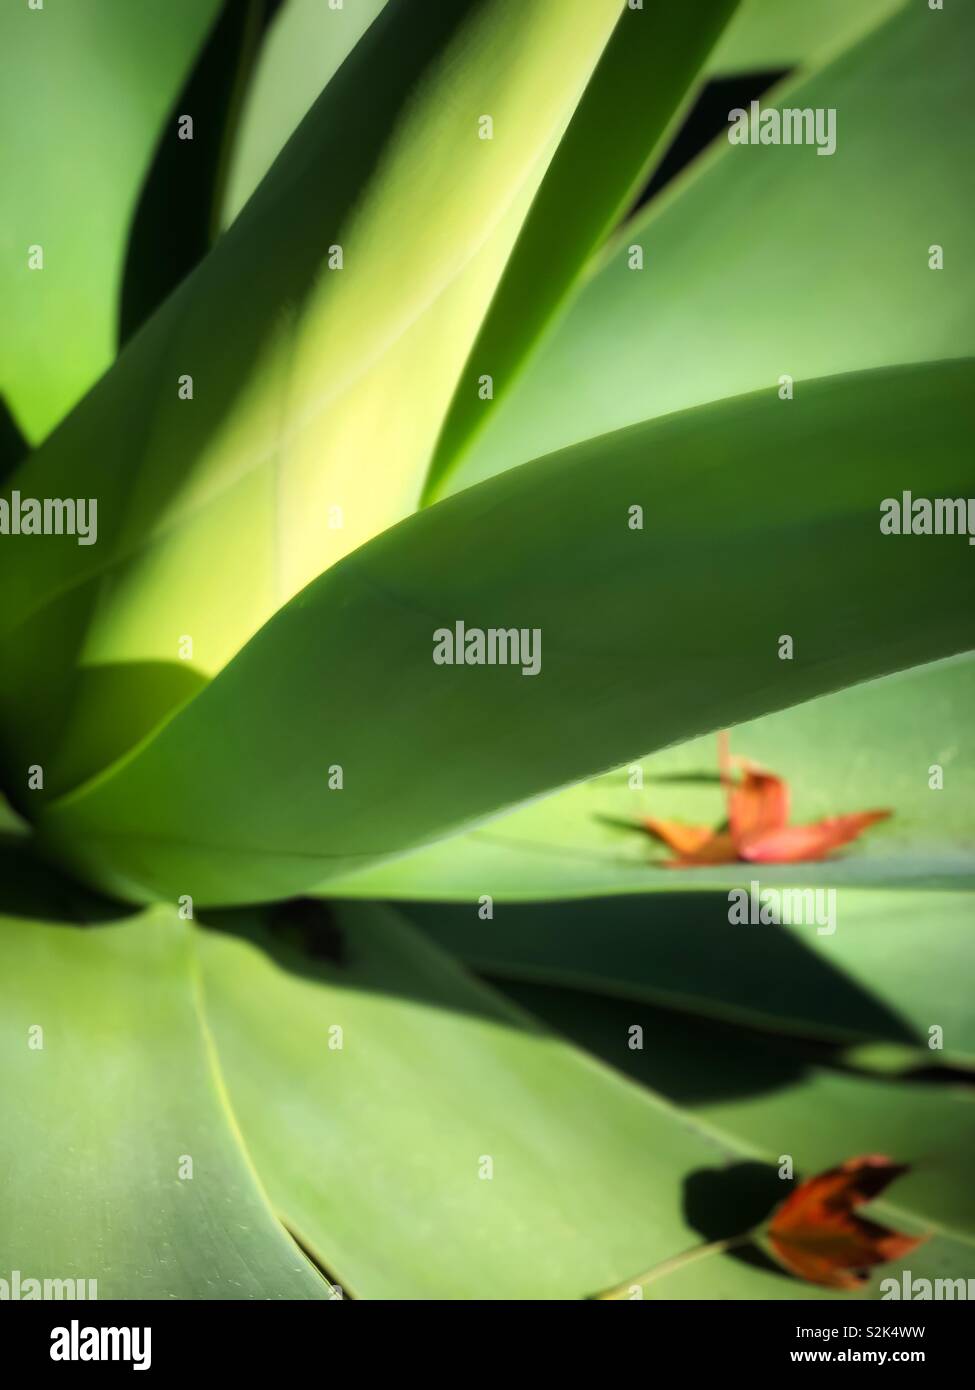 龍舌蘭科之翡翠盤 / Agave attenuata Salm-Dyck with two dying leaves on it in the morning sun Stock Photo